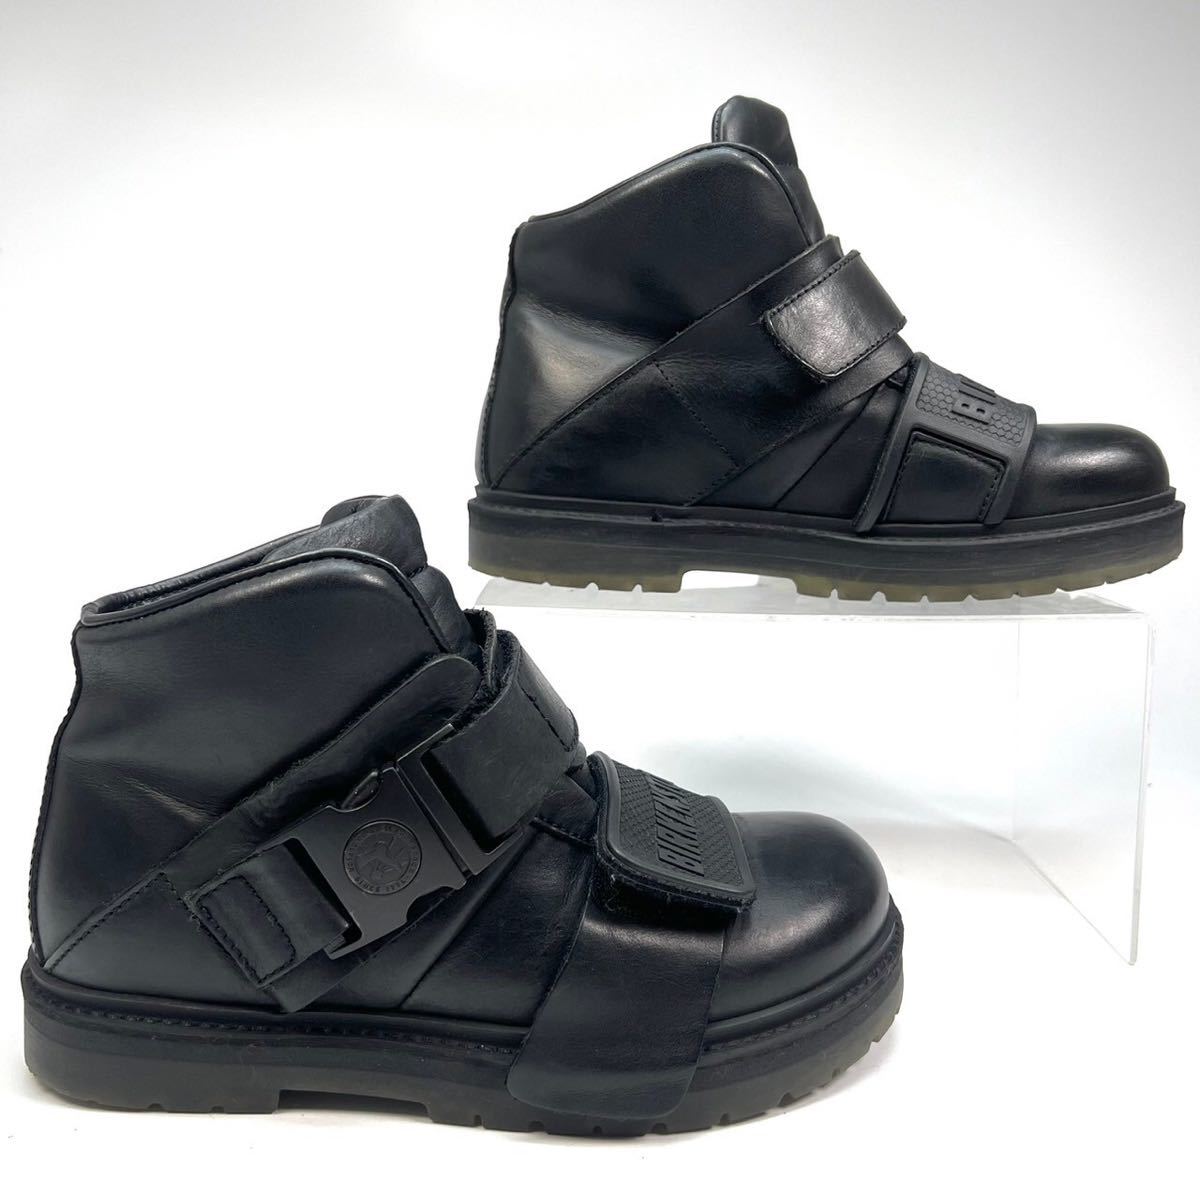 BIRKENSTOCK Rick Owens Birkenstock Rick Owens кожа ботинки 36 23cm женский обувь обувь черный чёрный 